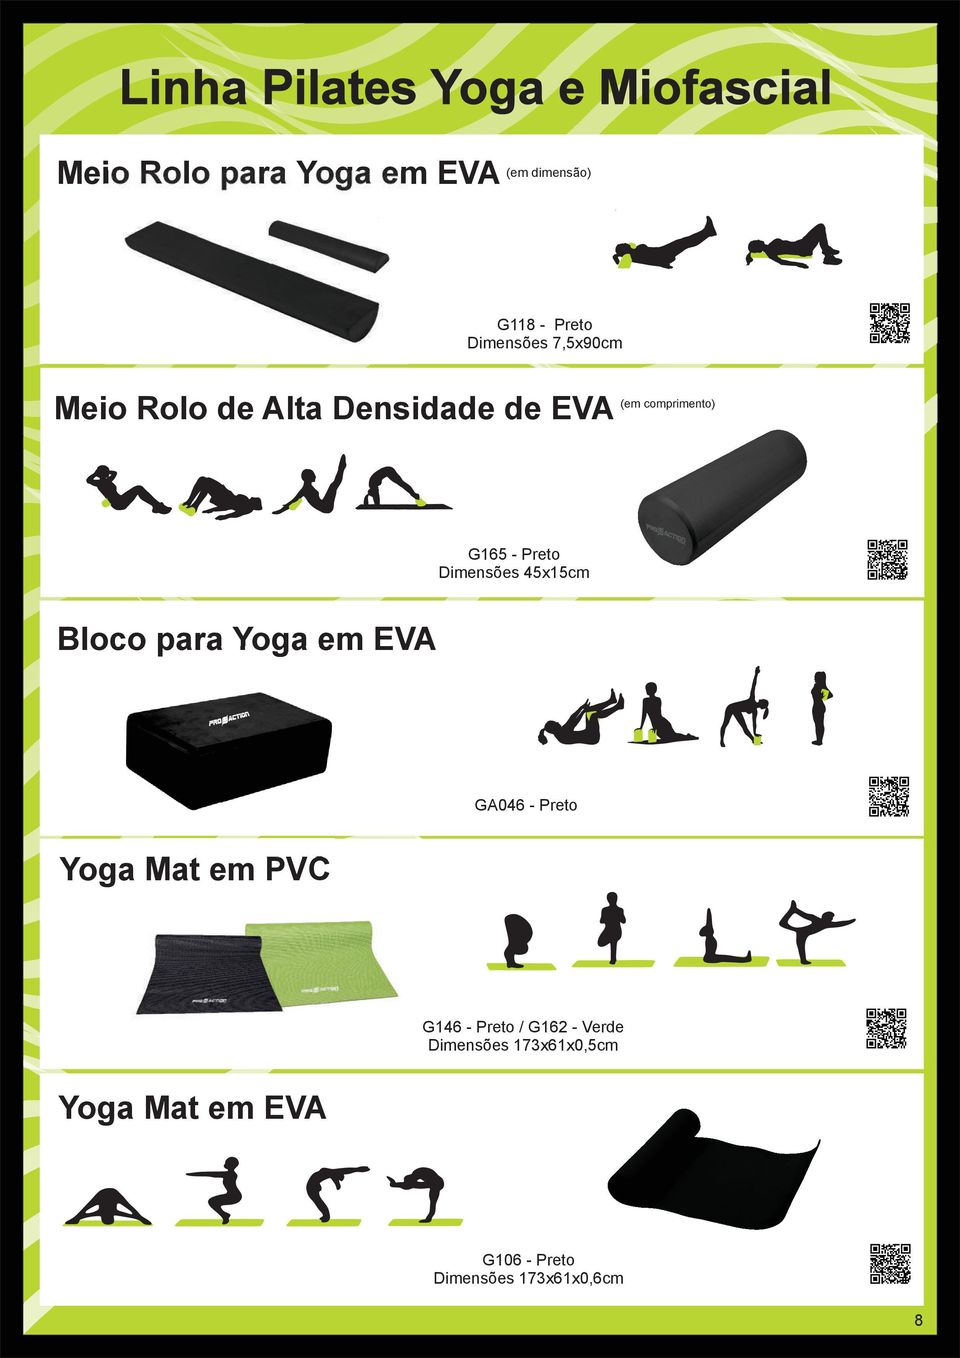 Dimensões 45x15cm Bloco para Yoga em EVA GA046 - Preto Yoga Mat em PVC G146 - Preto /